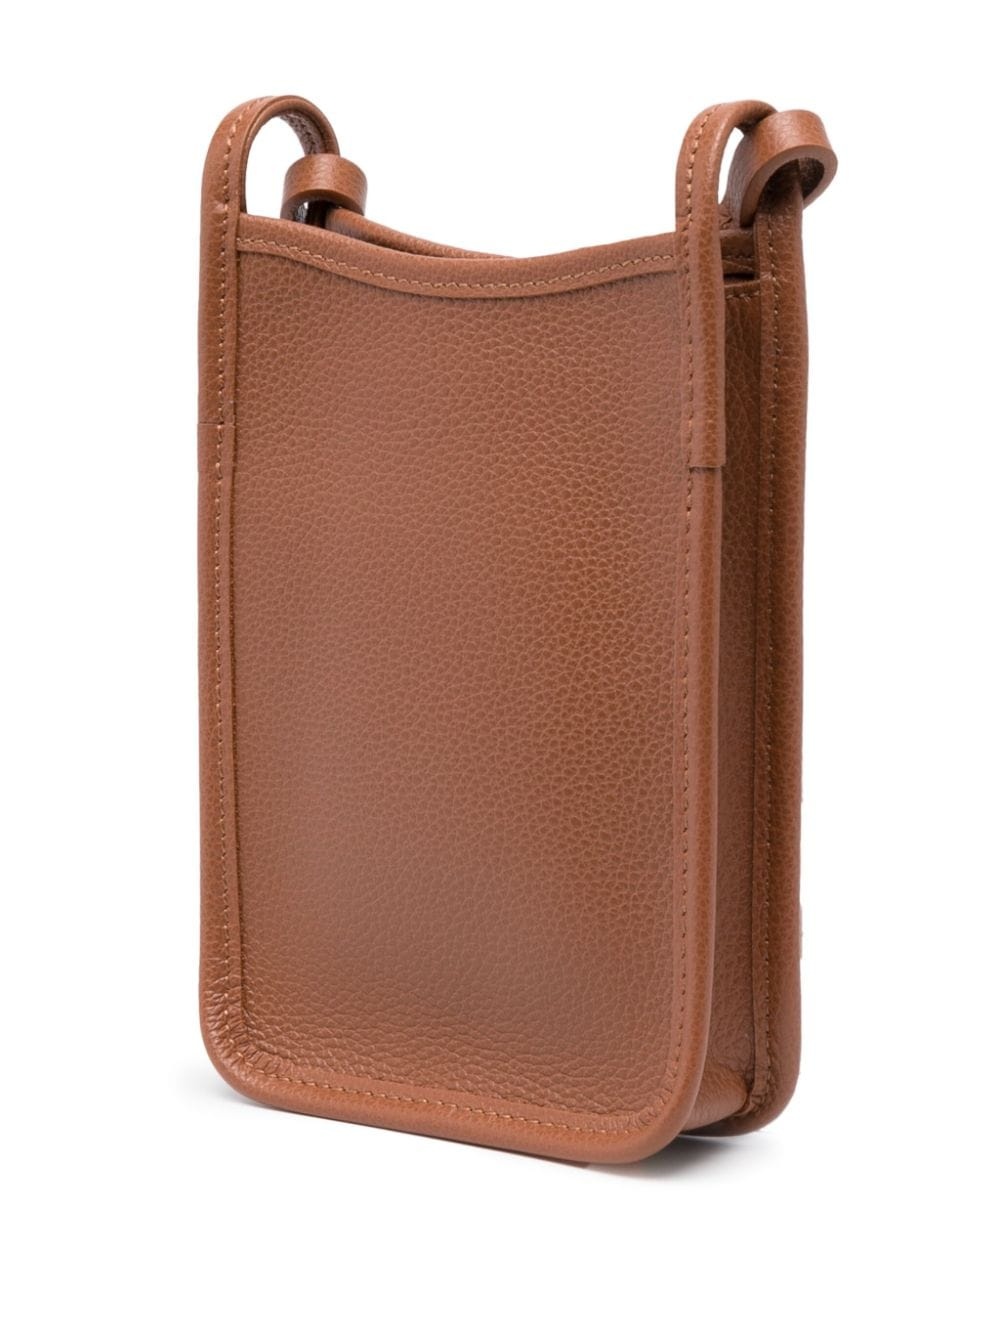 Le FoulonnÃ© leather mini bag - 4